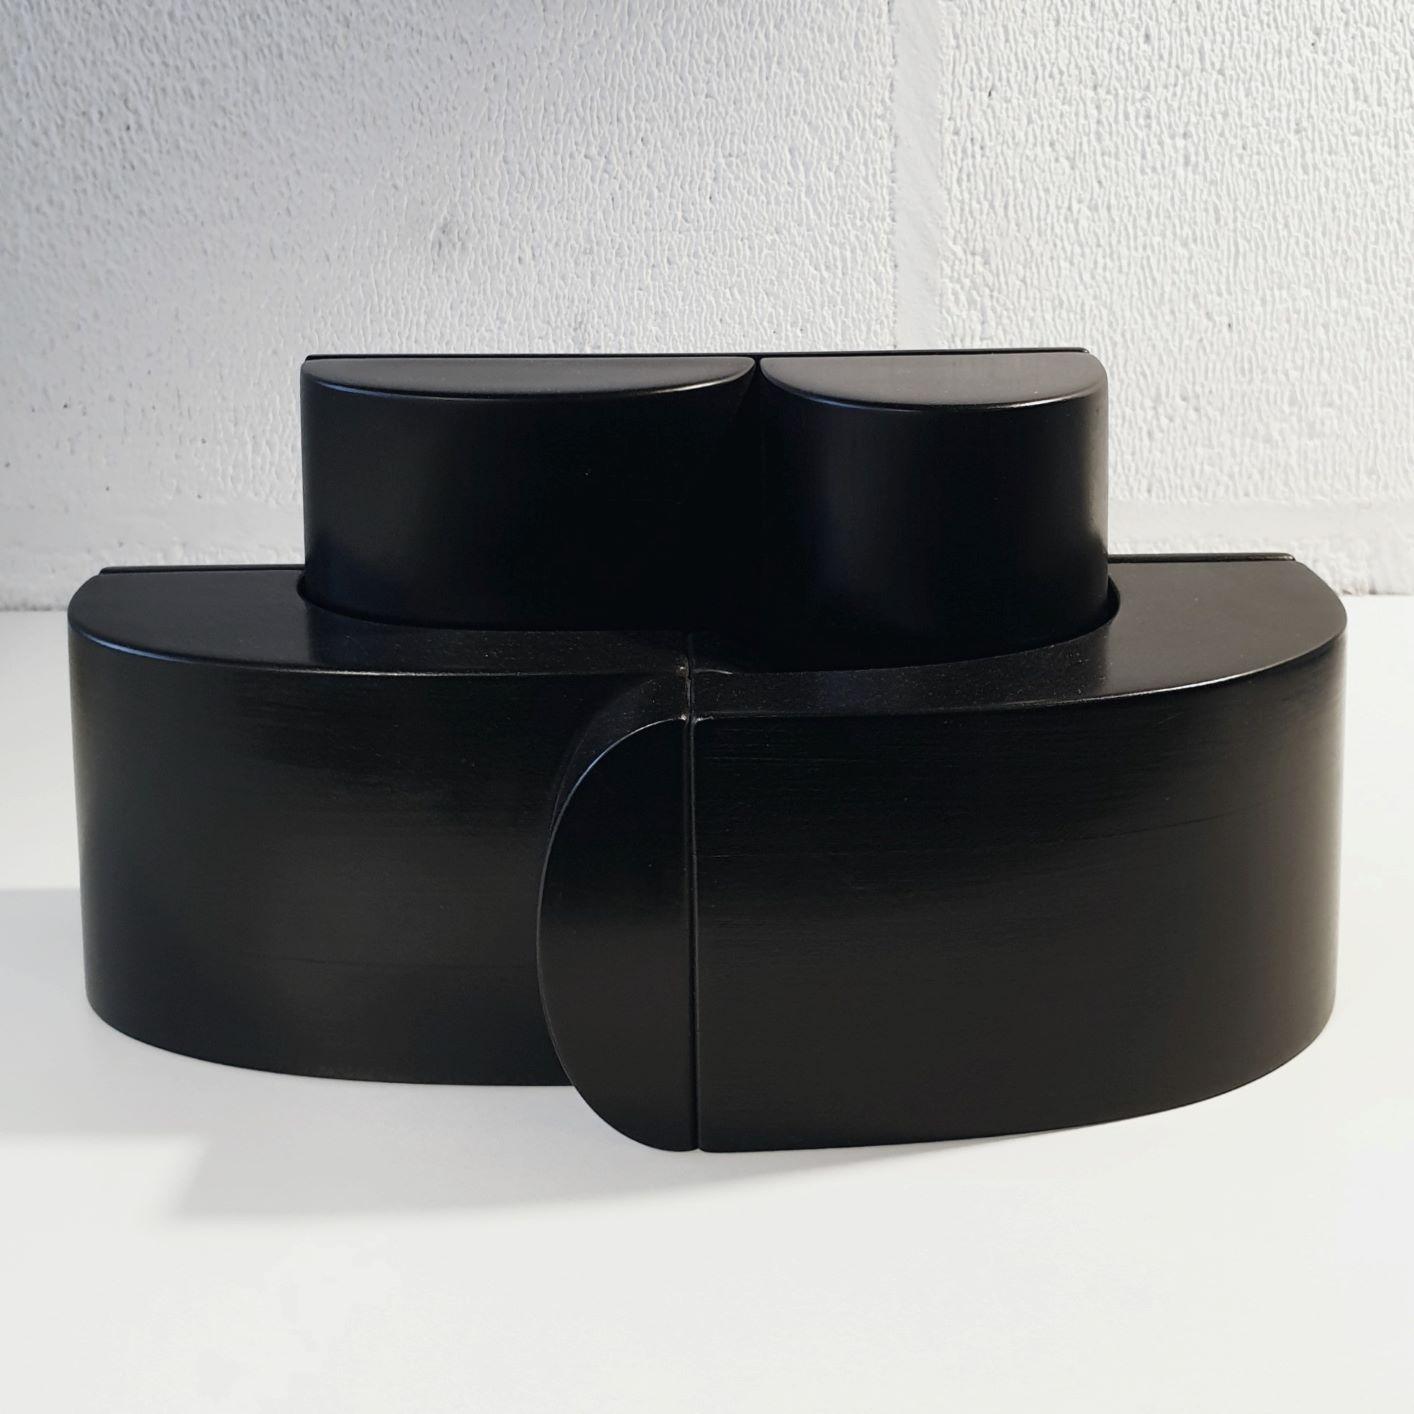 Embrasse - Sculpture en bois géométrique abstraite noire contemporaine et moderne